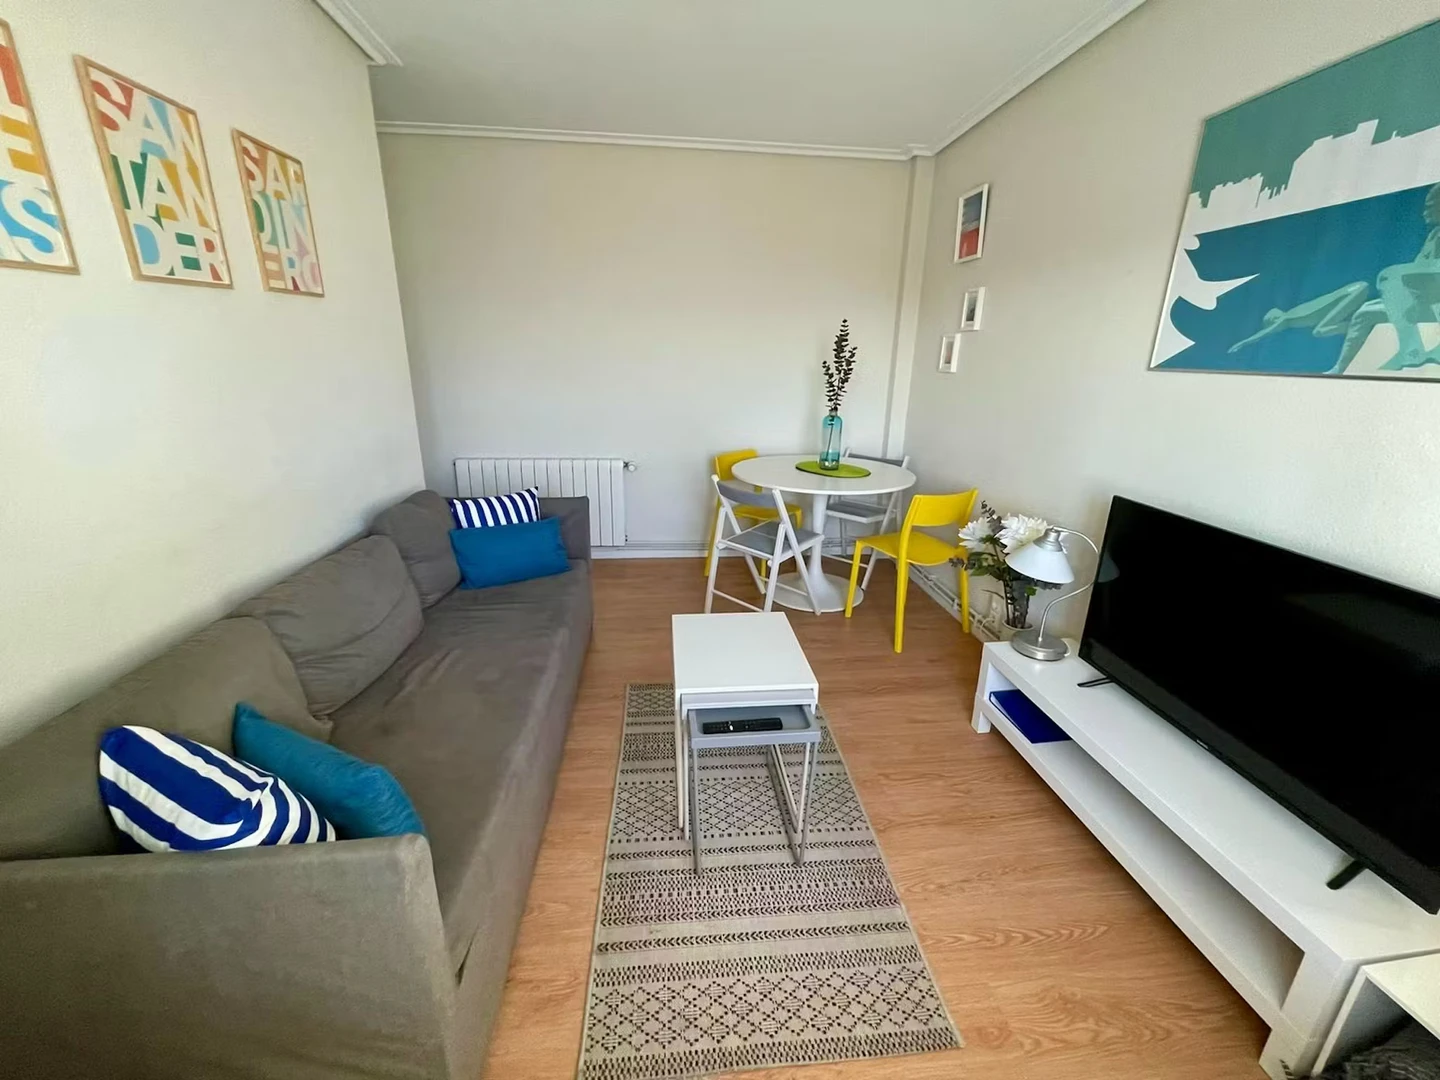 Alquiler de habitación en piso compartido en Santander